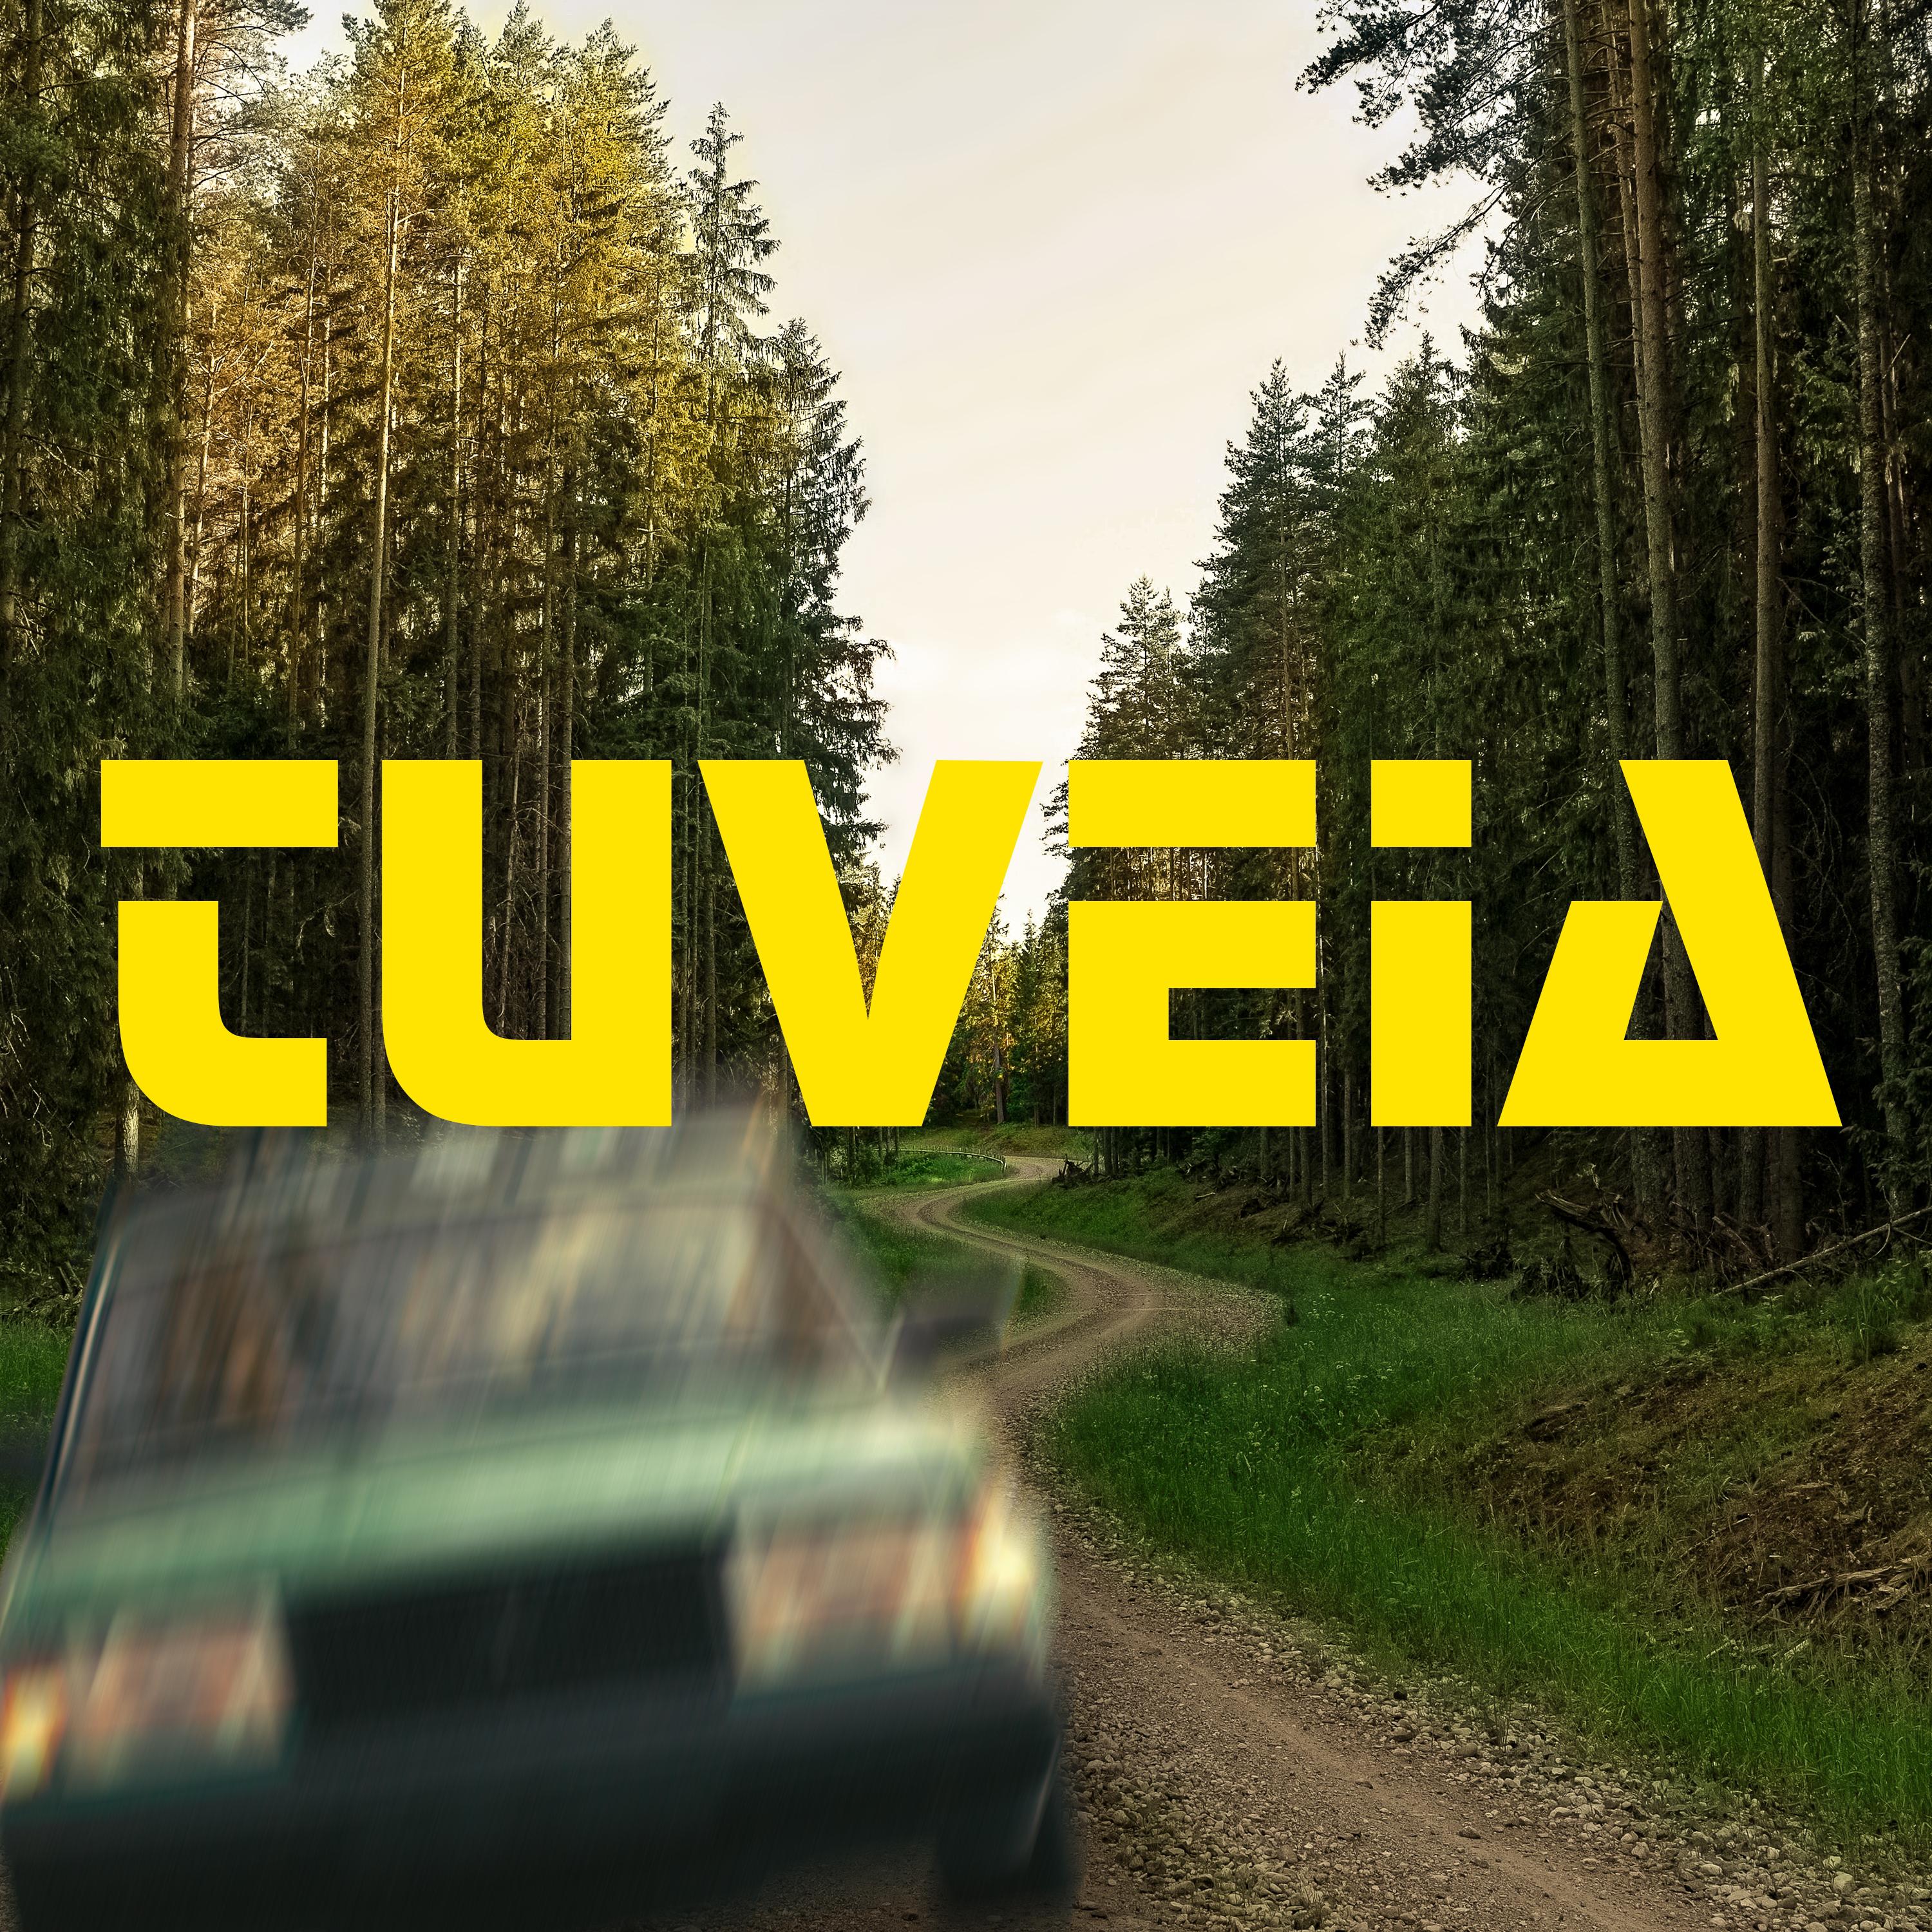 Tuveia - Søkkhakketa 2018-versjonen (Fordi så mange fans har spurt etter den)